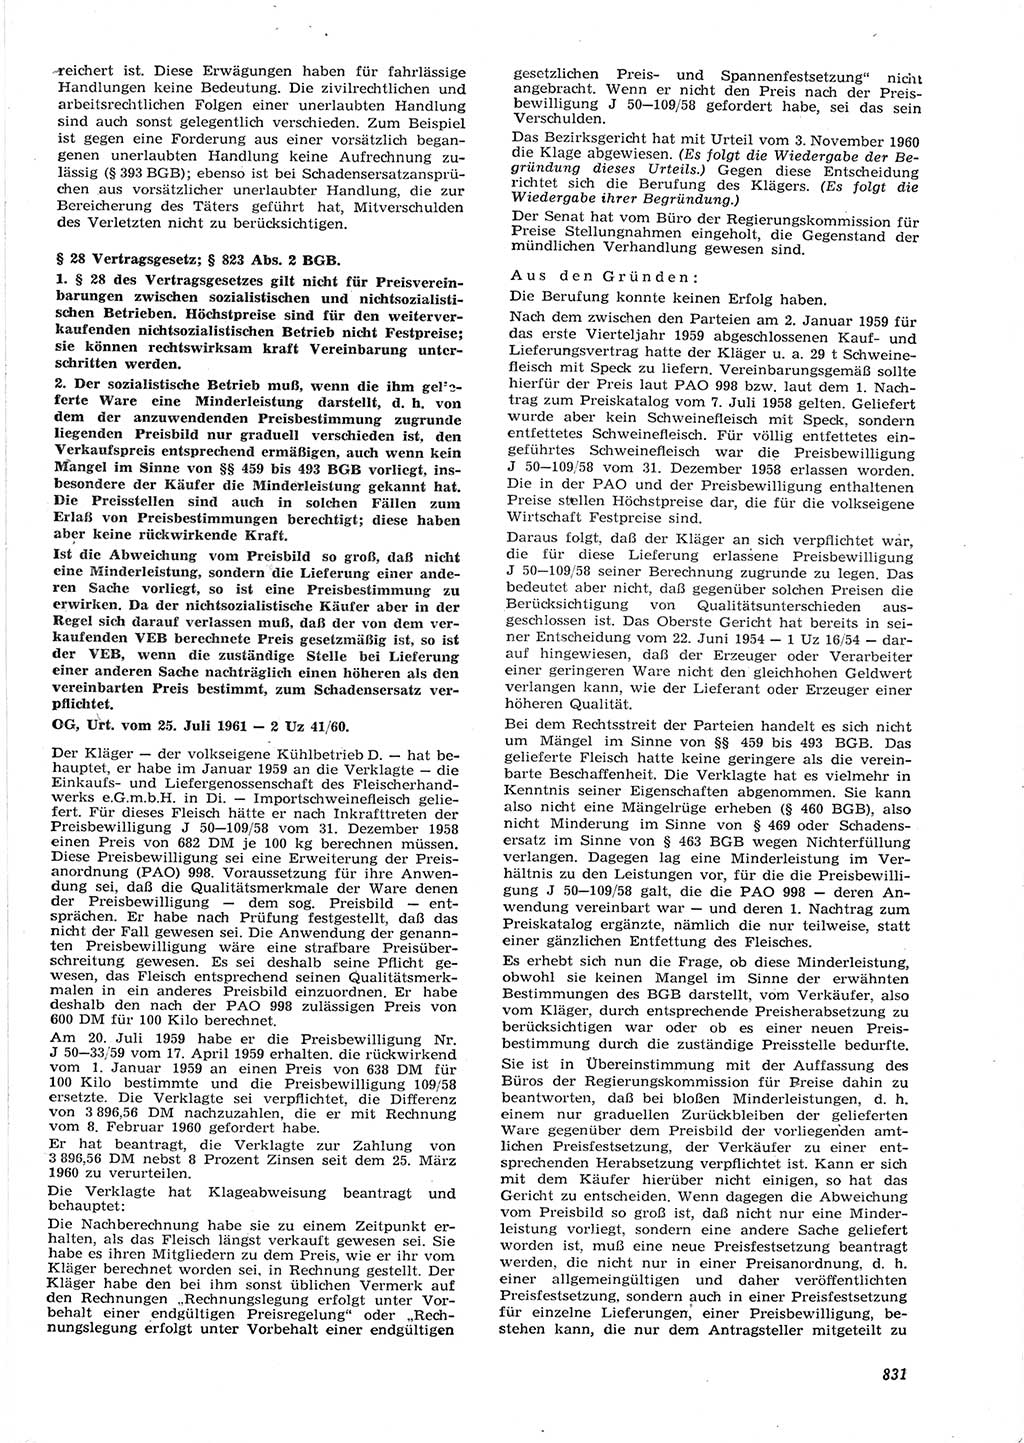 Neue Justiz (NJ), Zeitschrift für Recht und Rechtswissenschaft [Deutsche Demokratische Republik (DDR)], 15. Jahrgang 1961, Seite 831 (NJ DDR 1961, S. 831)